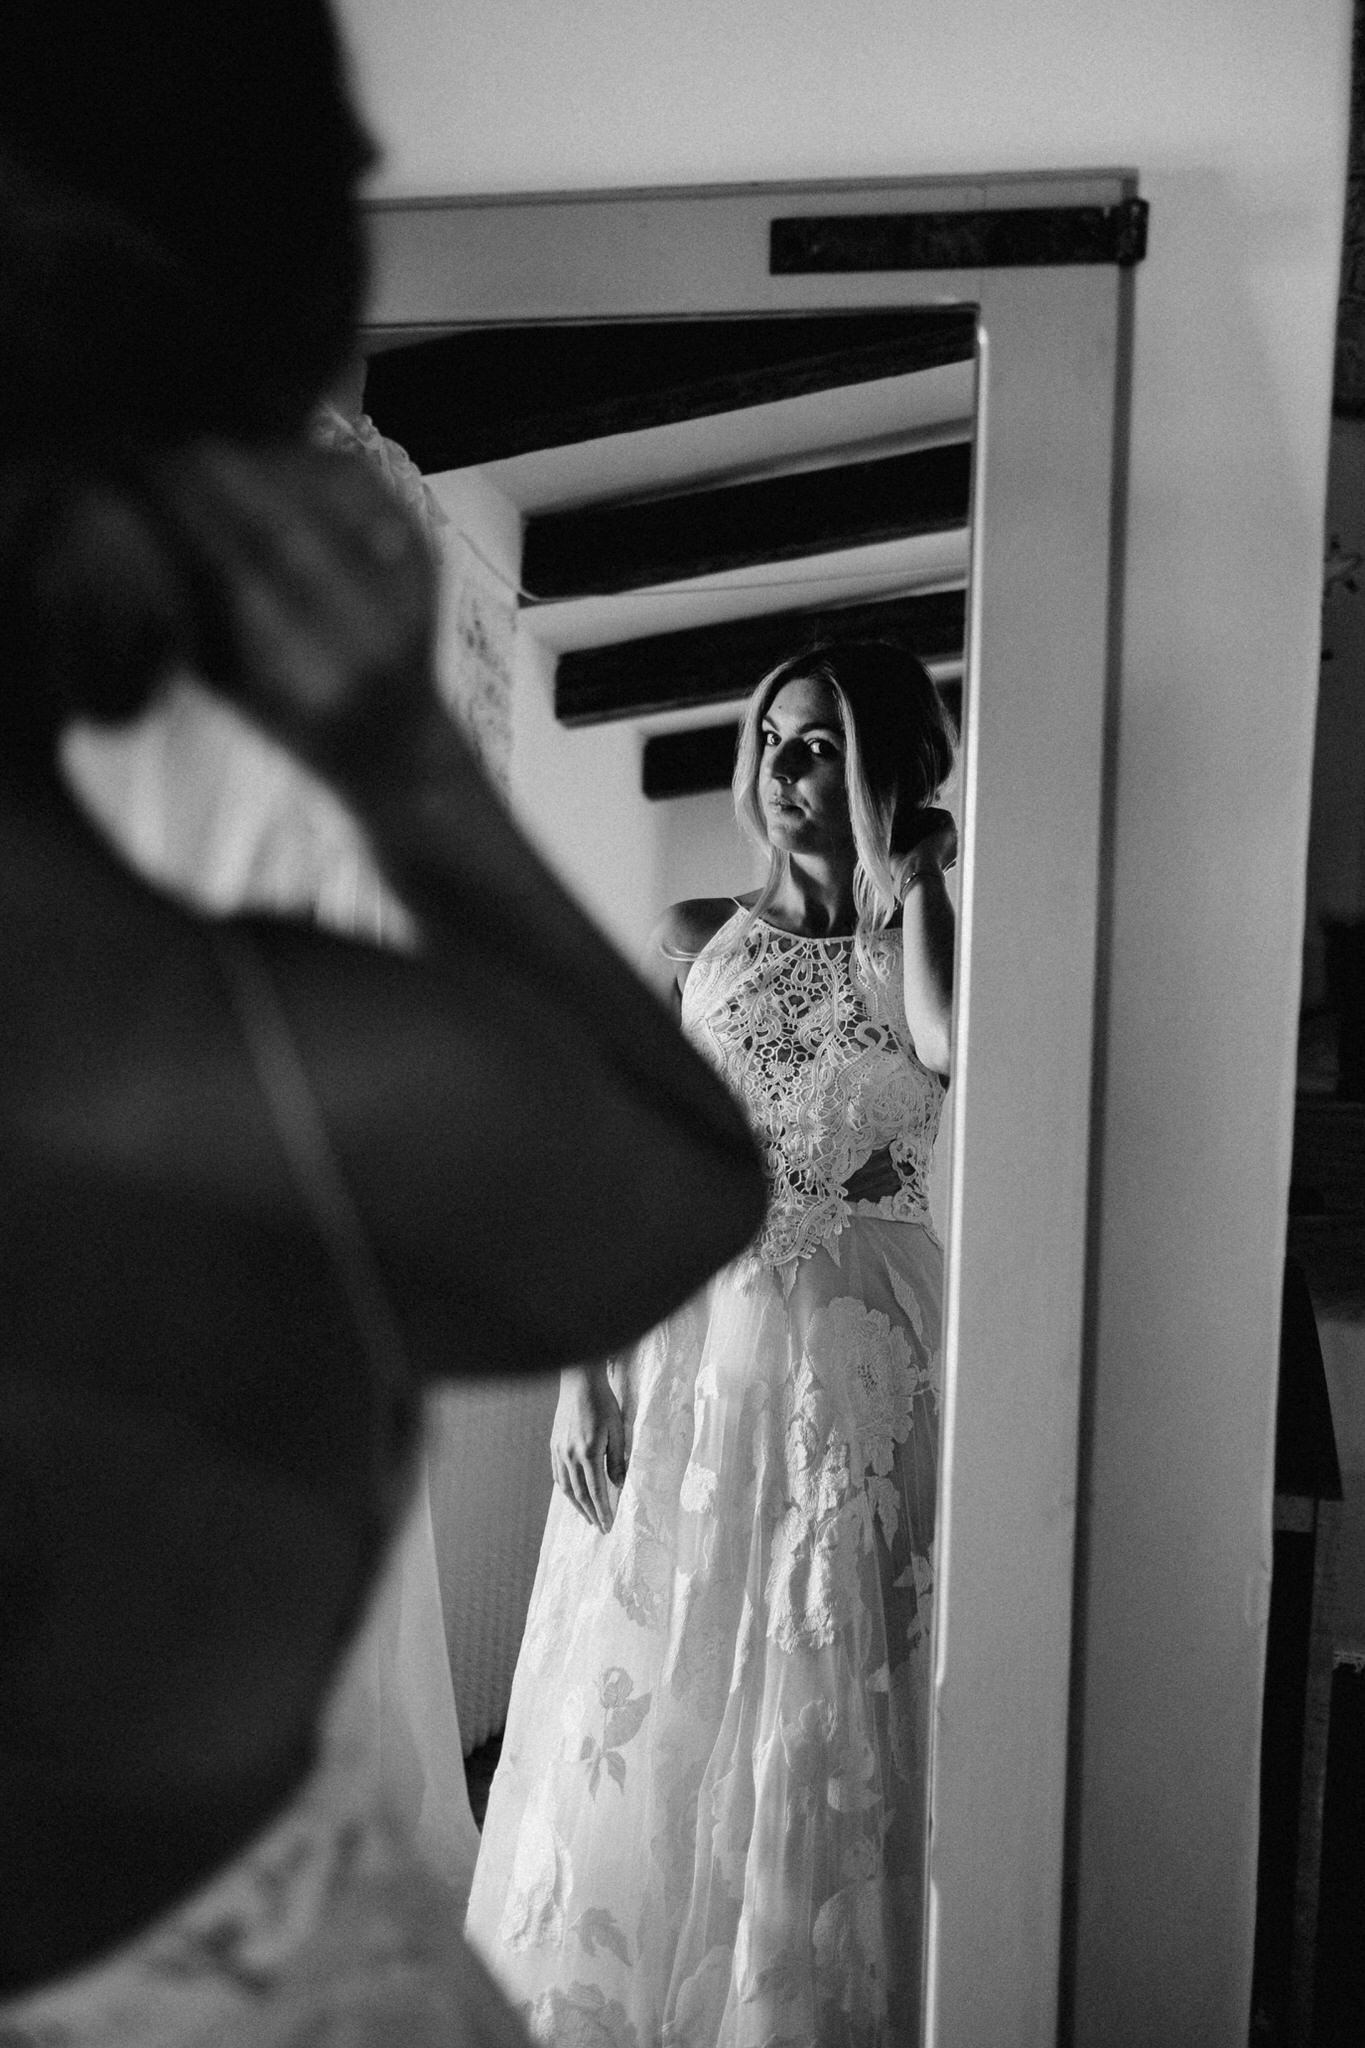 Getting ready - Wedding in Apulia, Italy - 35mm